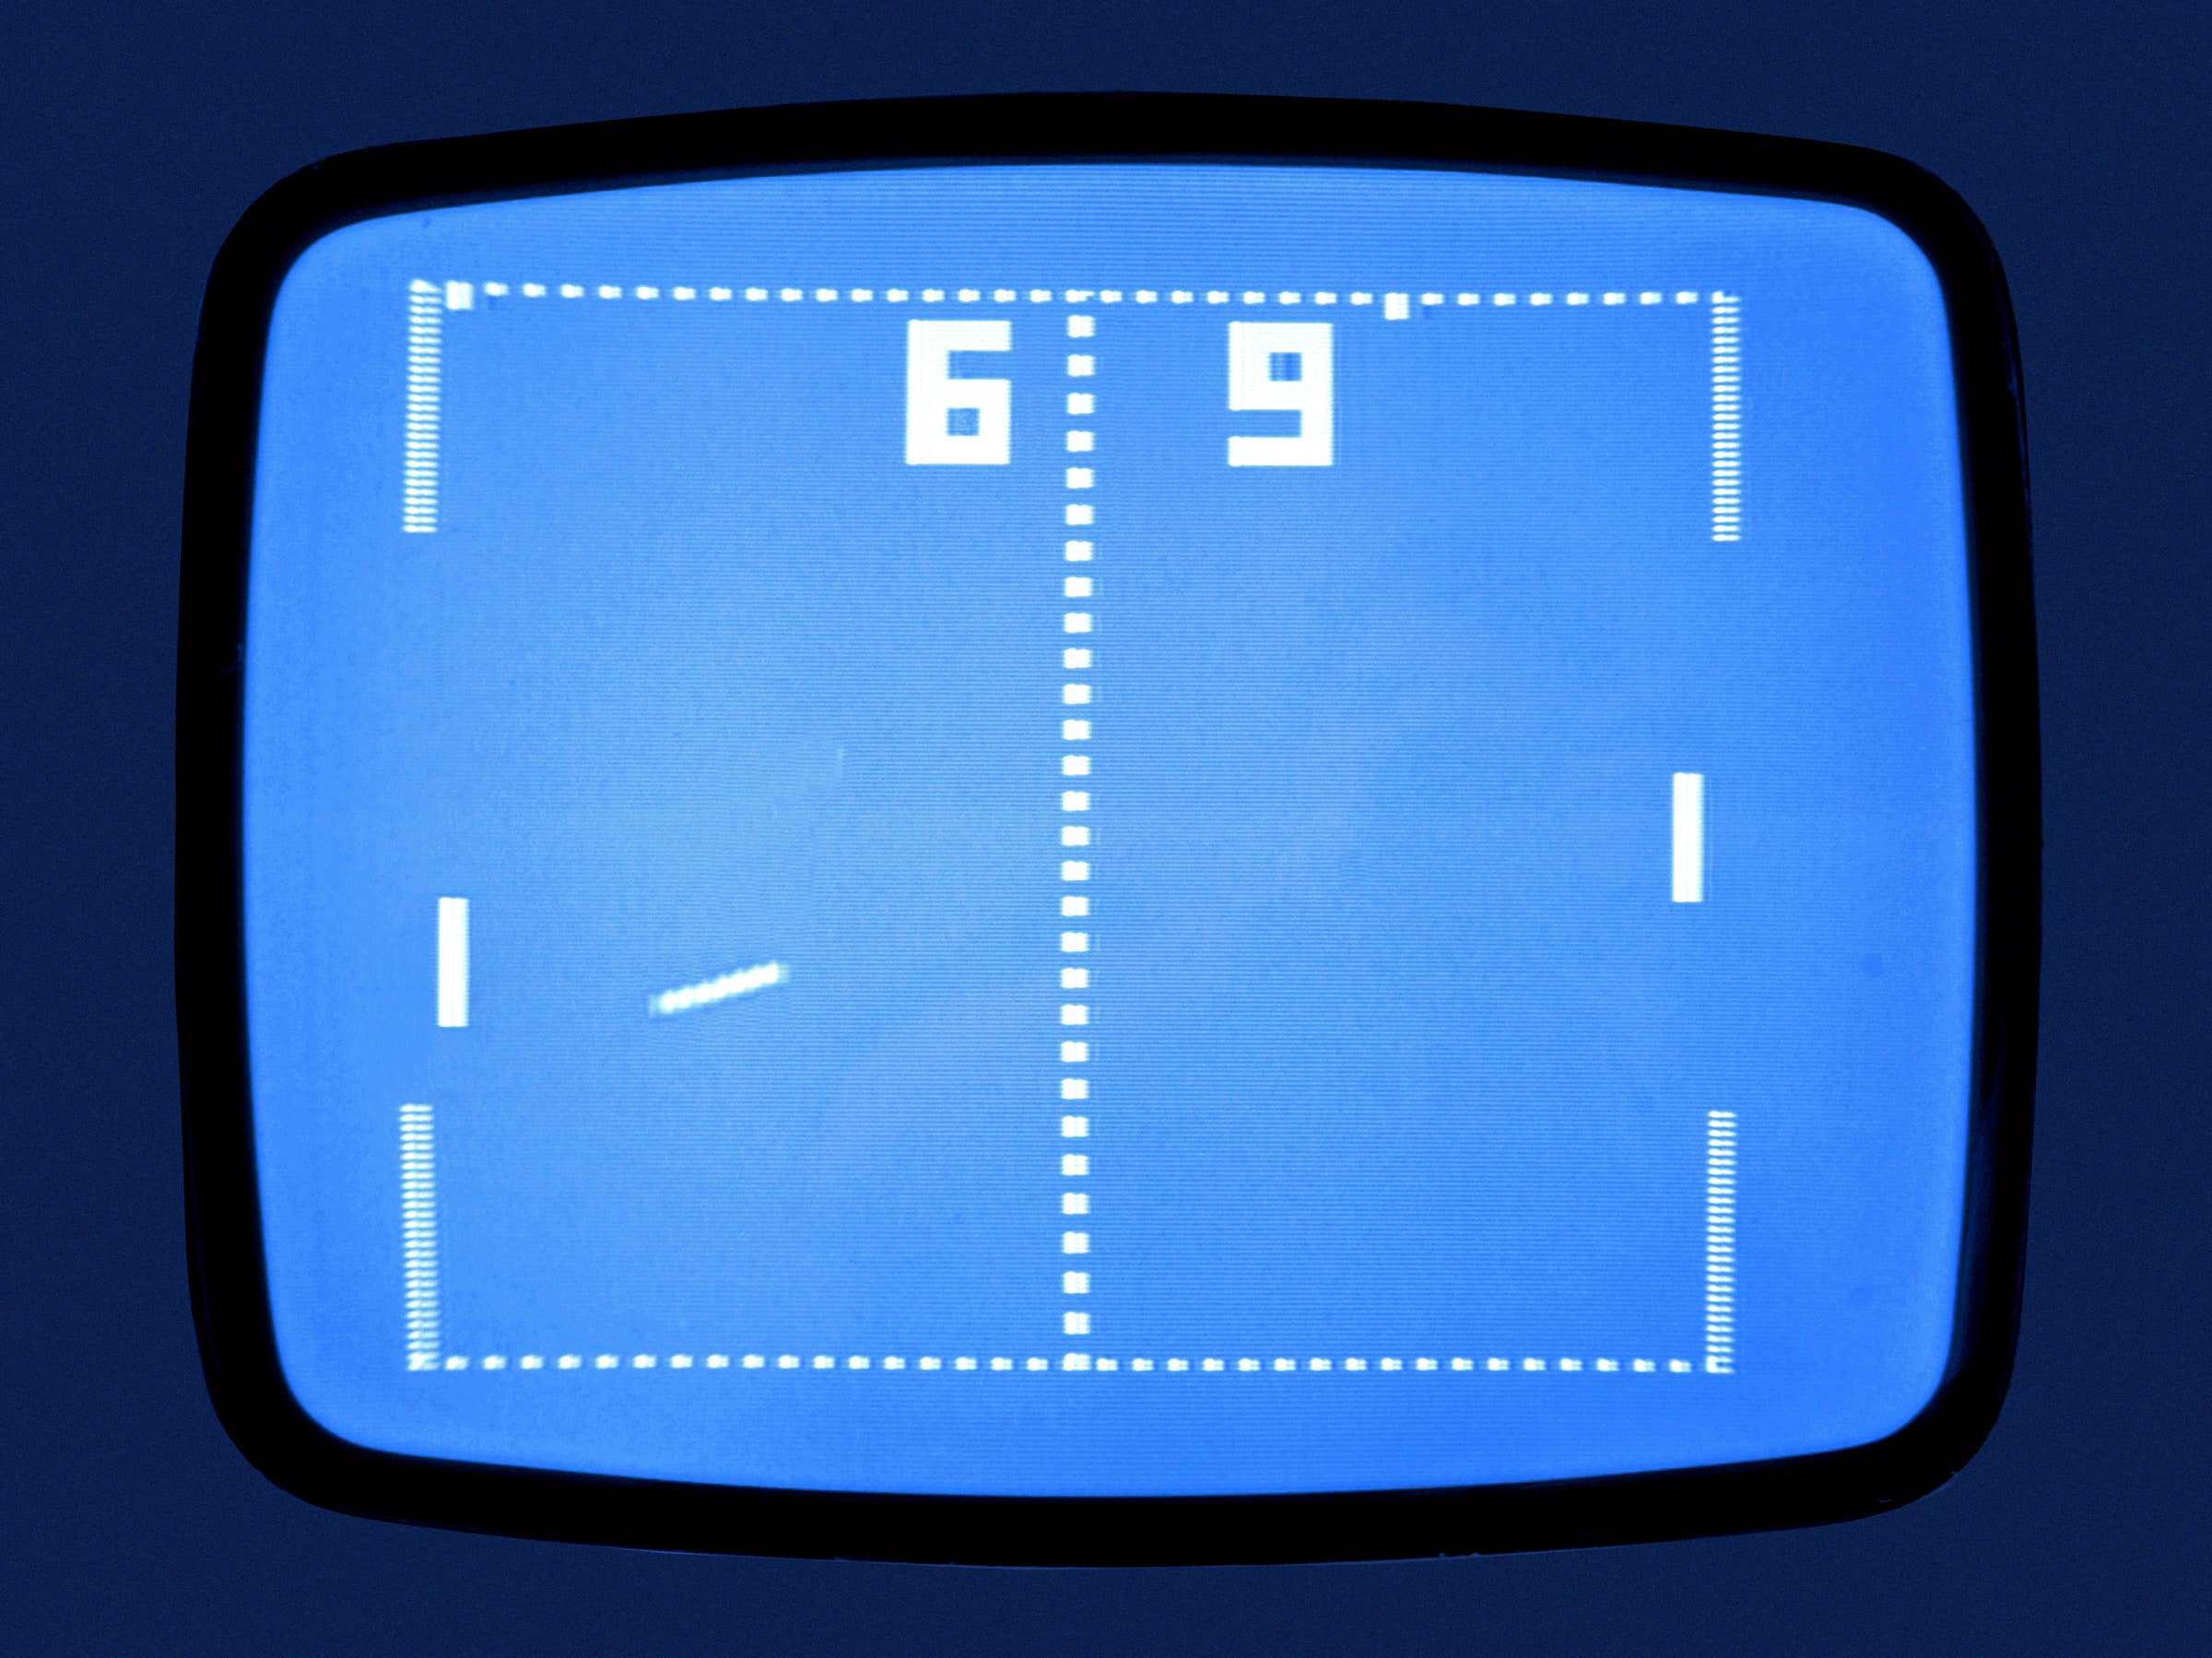 《Pong》是雅達利的第一個家庭電視遊戲產品，也是波蘭人民最早能接觸到的遊戲之一